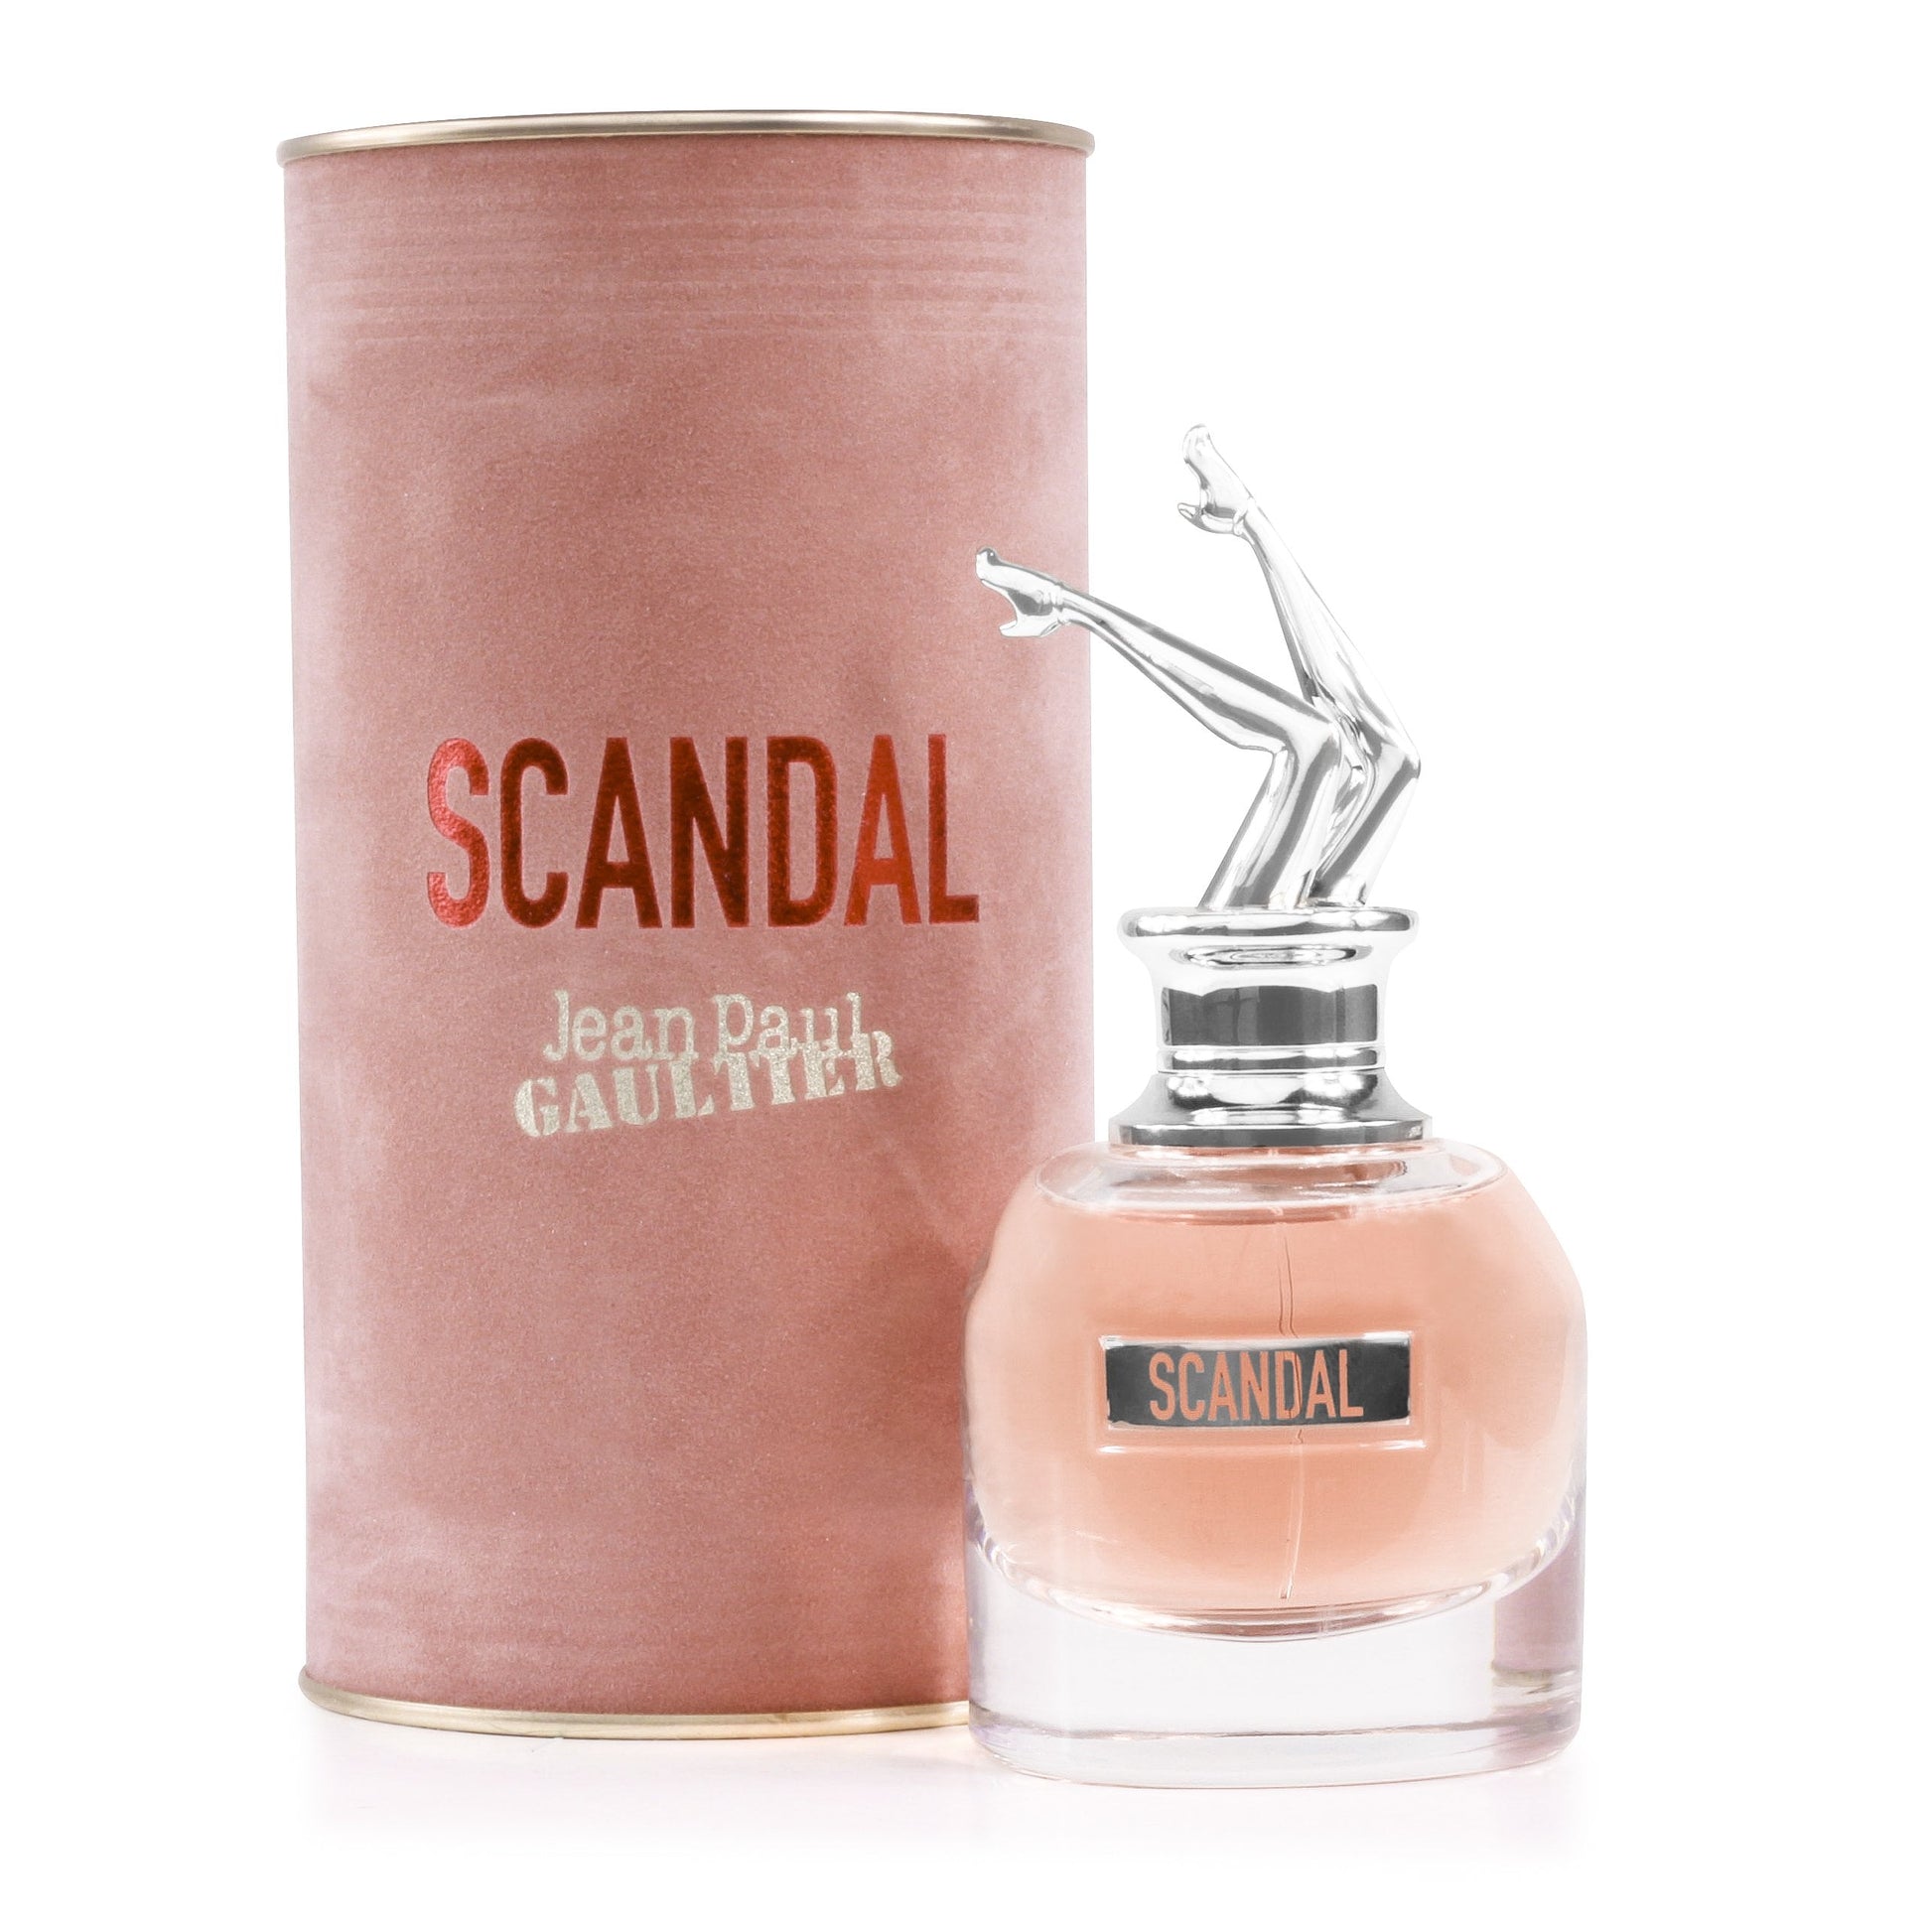 Scandal Eau de Parfum Spray for Women by Jean Paul Gaultier, Product image 1